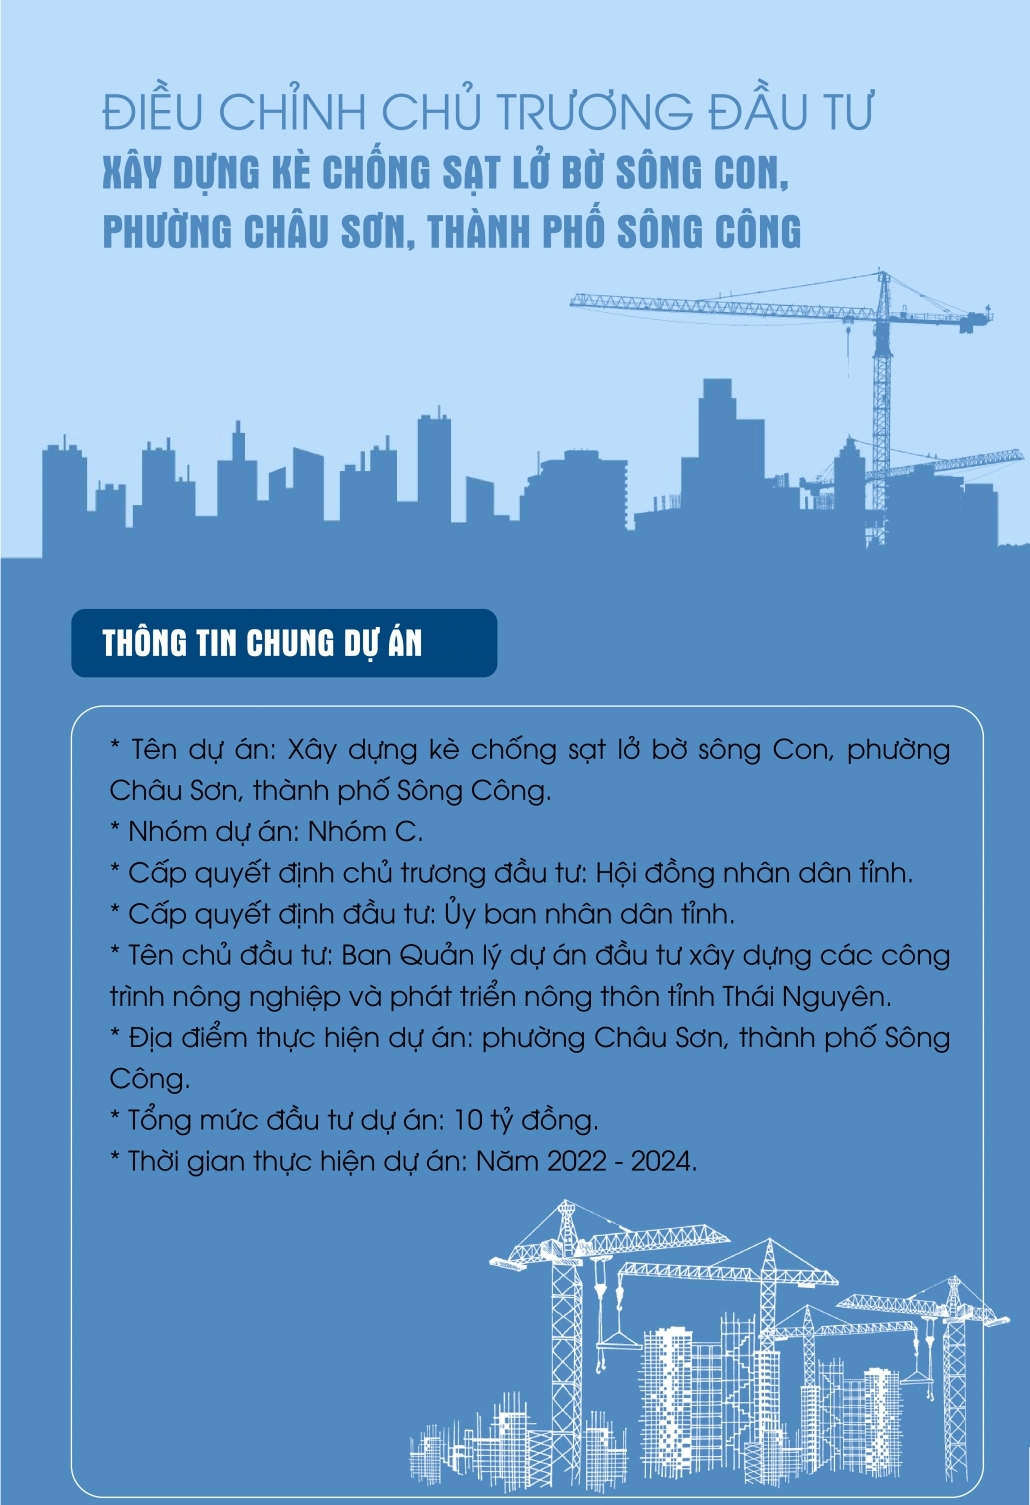 [Infographic] Điều chỉnh chủ trương đầu tư xây dựng kè chống sạt lở bờ sông Con, phường Châu Sơn, thành phố Sông Công